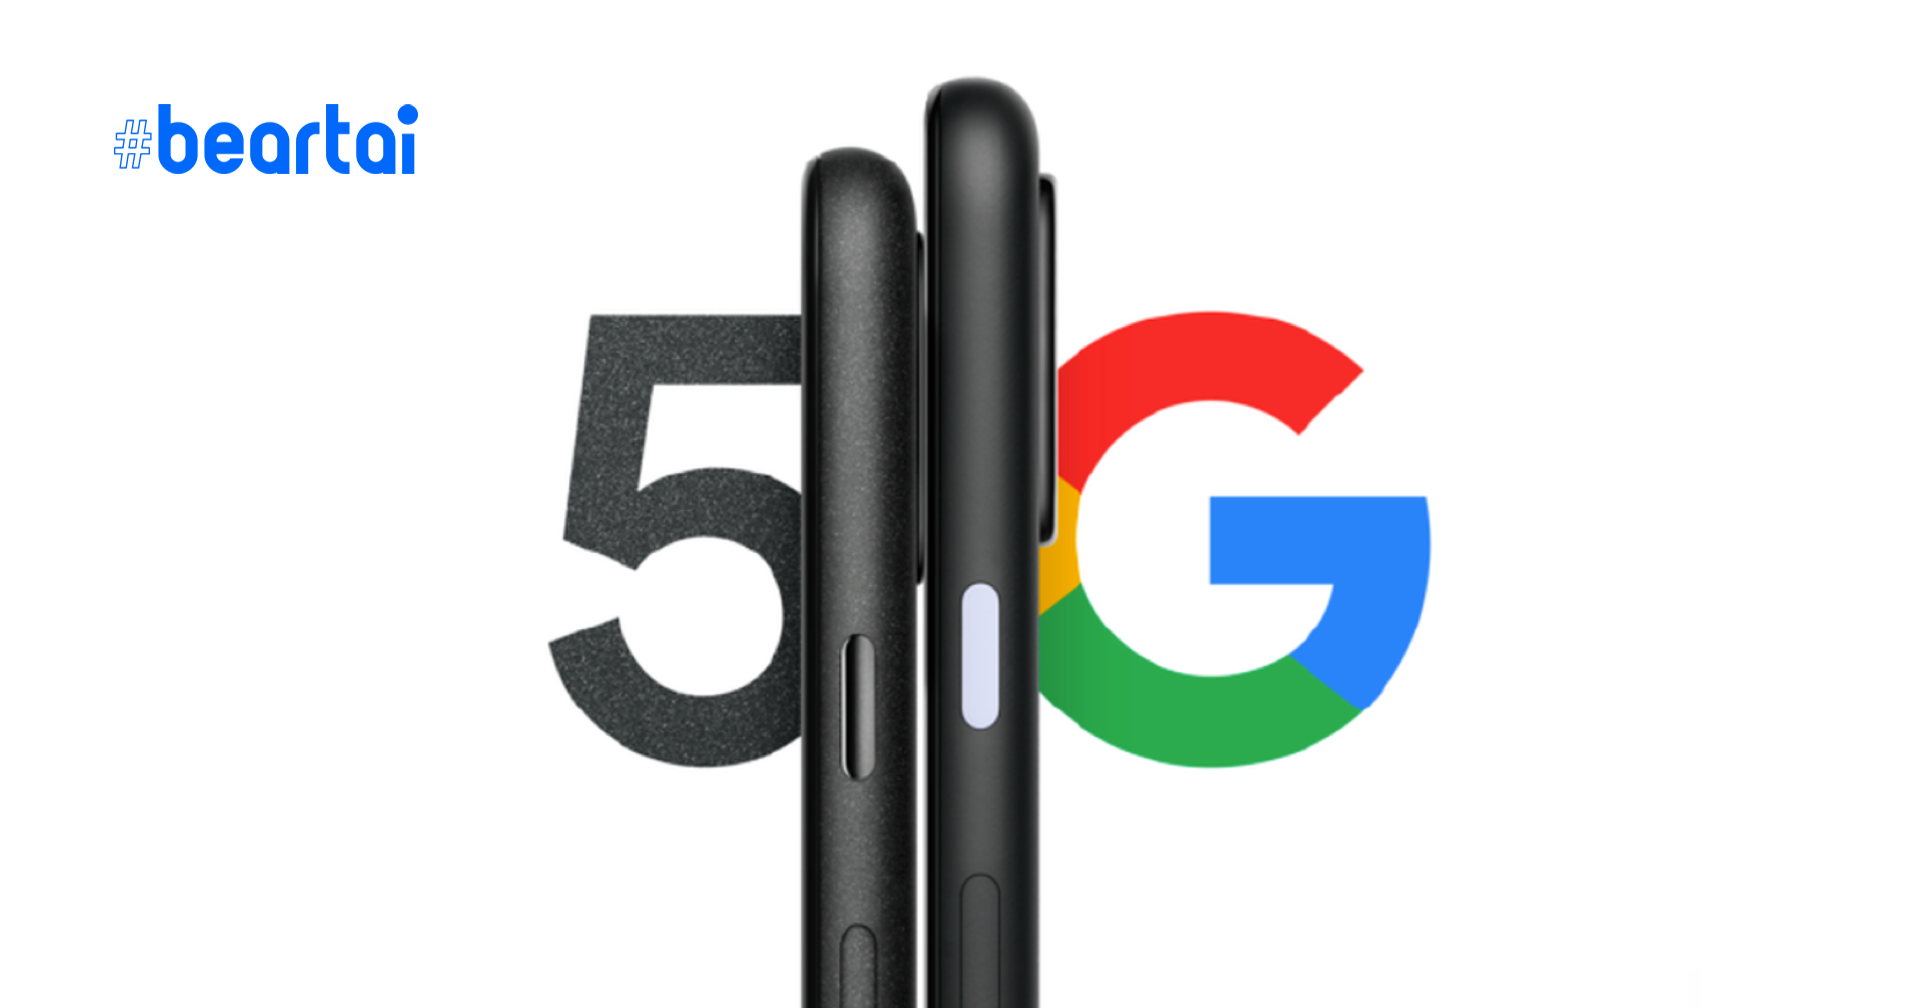 หรือ Google ก็สู้ราคาไม่ไหว? Pixel 5 เรือธงรุ่นใหม่อาจไม่ได้ใช้ Snapdragon 865